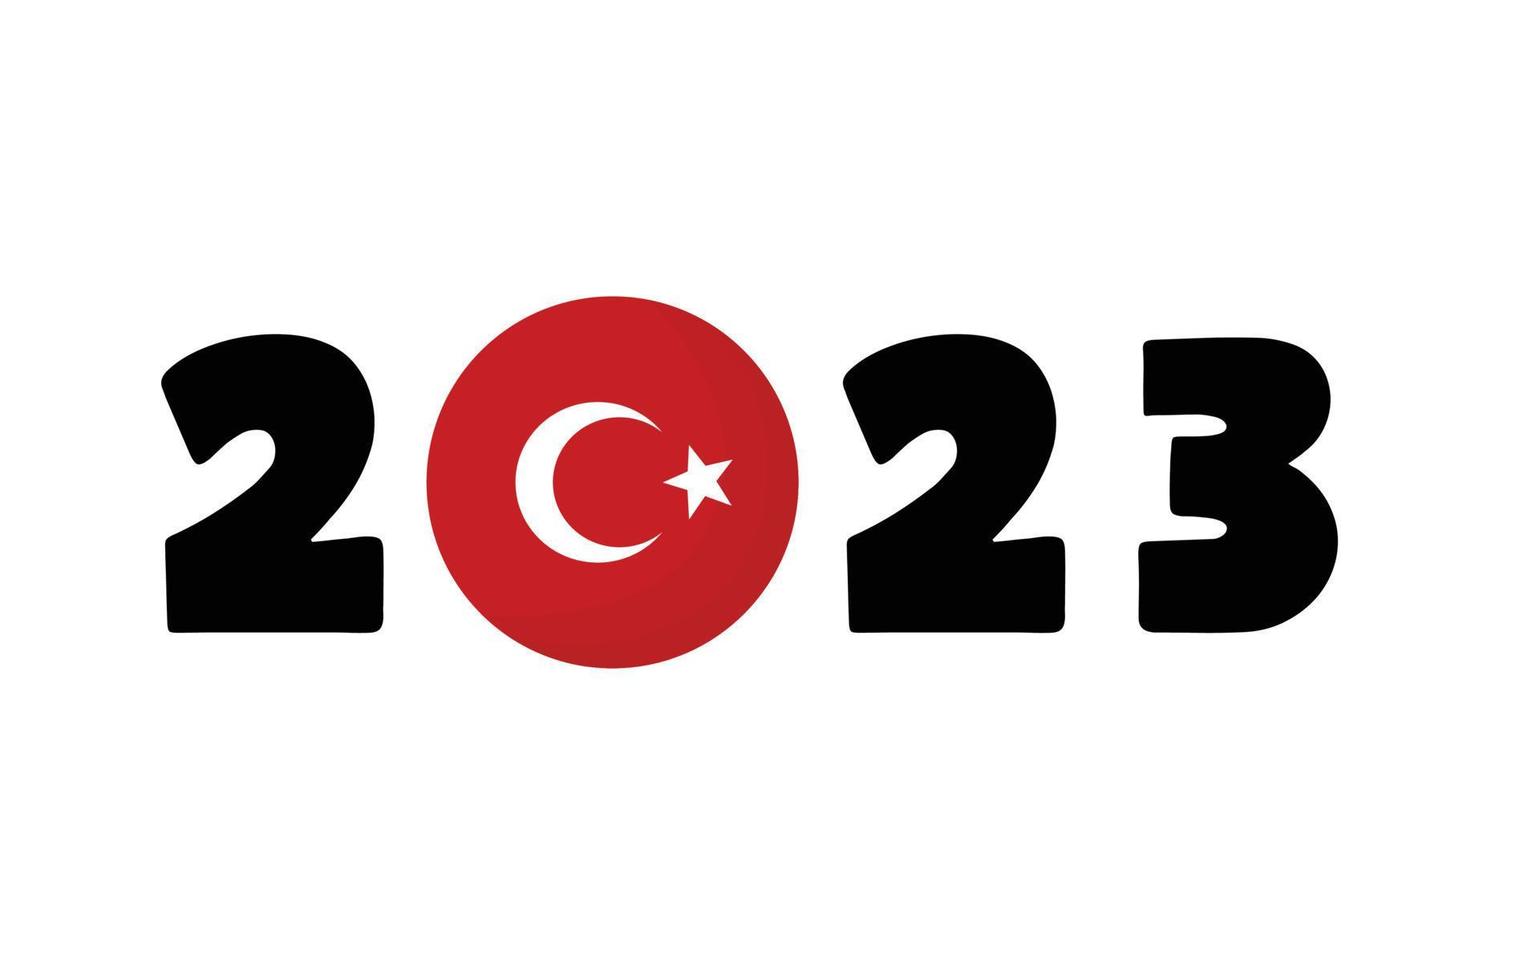 2023 elecciones del presidente del gobierno de turquía e ilustración del concepto de feriado nacional. bandera turca 2023. vector